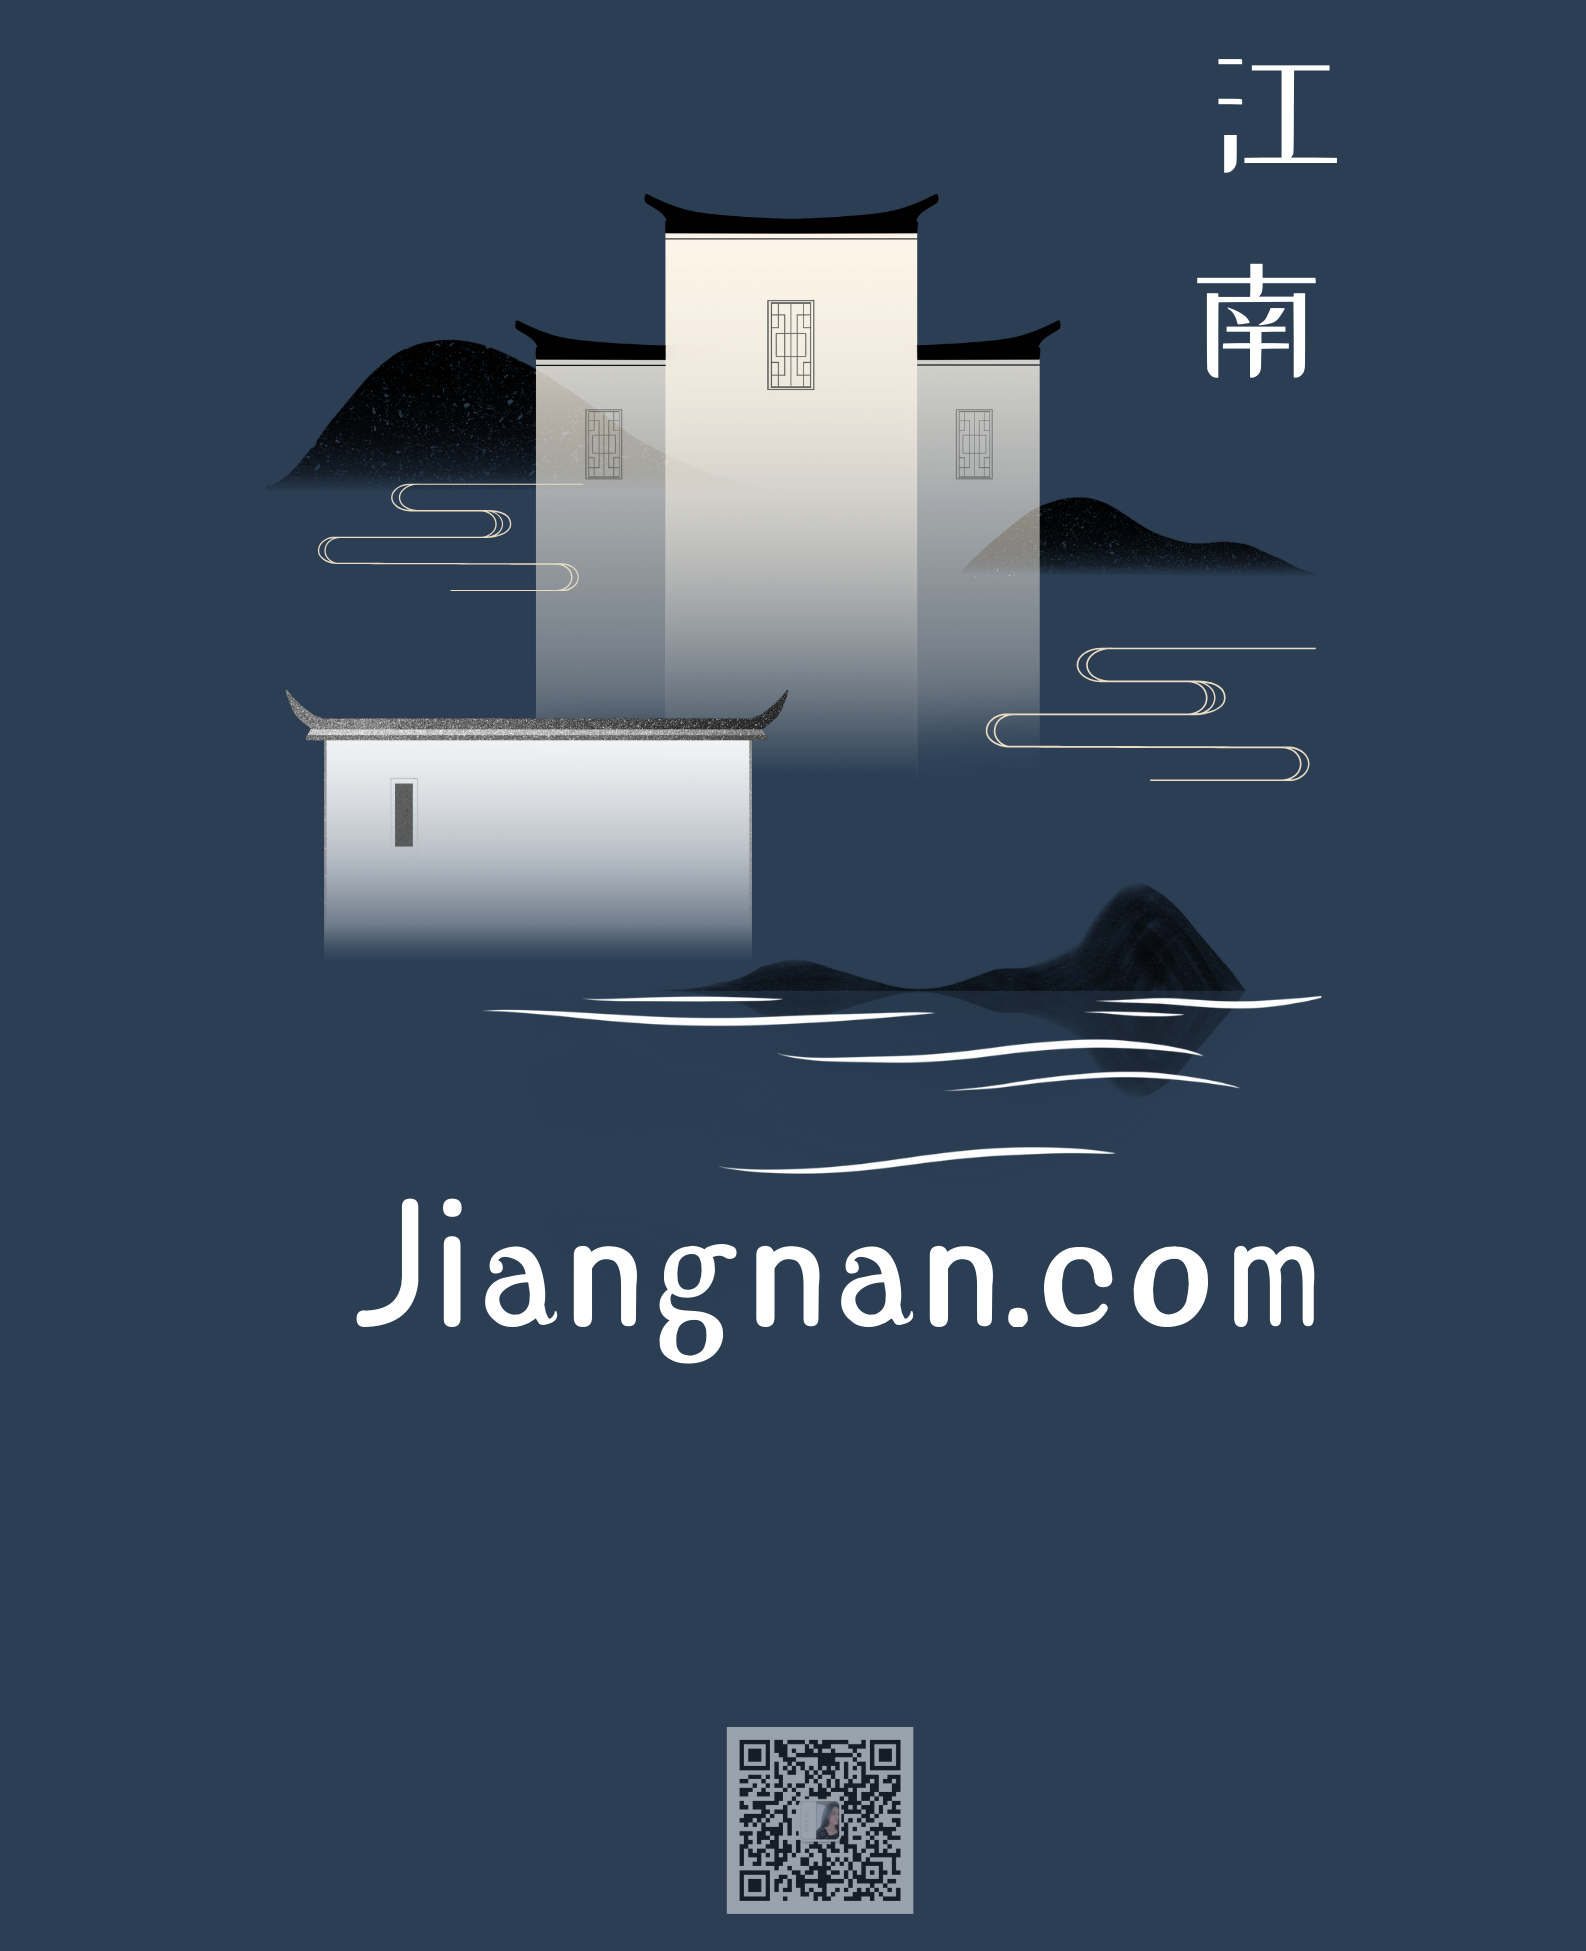 jiangnan.com